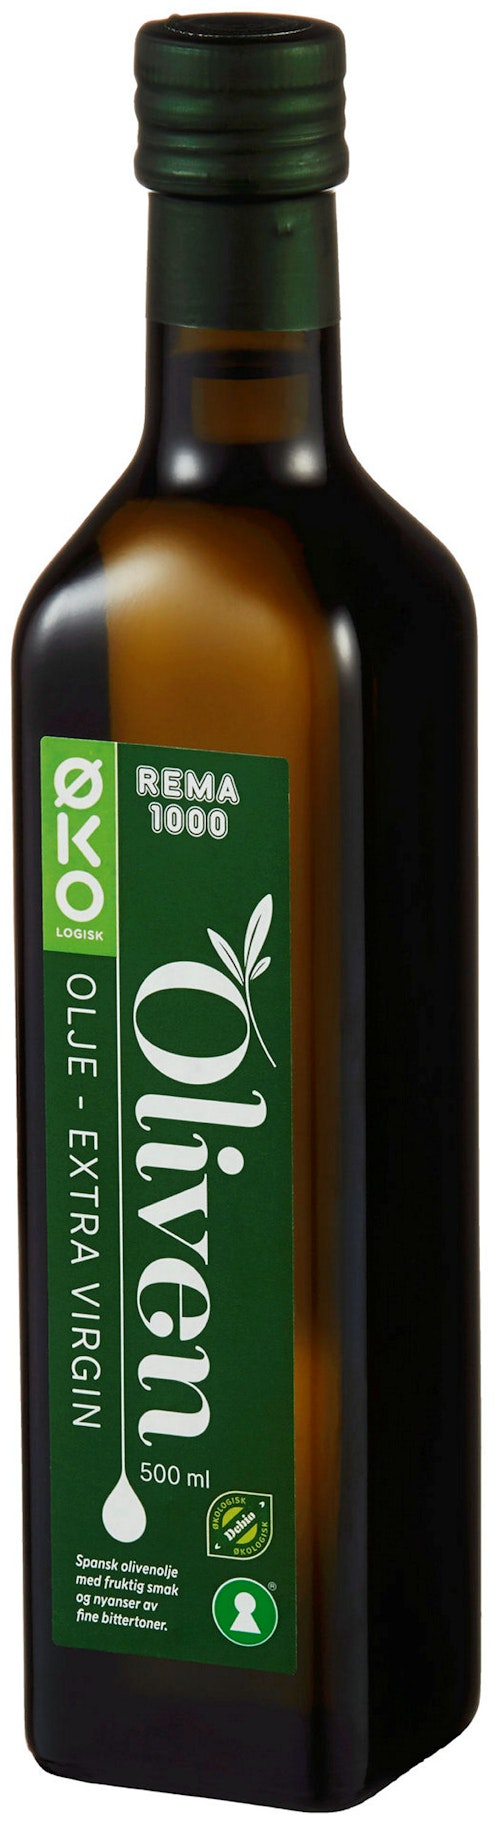 REMA 1000 Olivenolje Extra Virgin Økologisk, 0,5 l